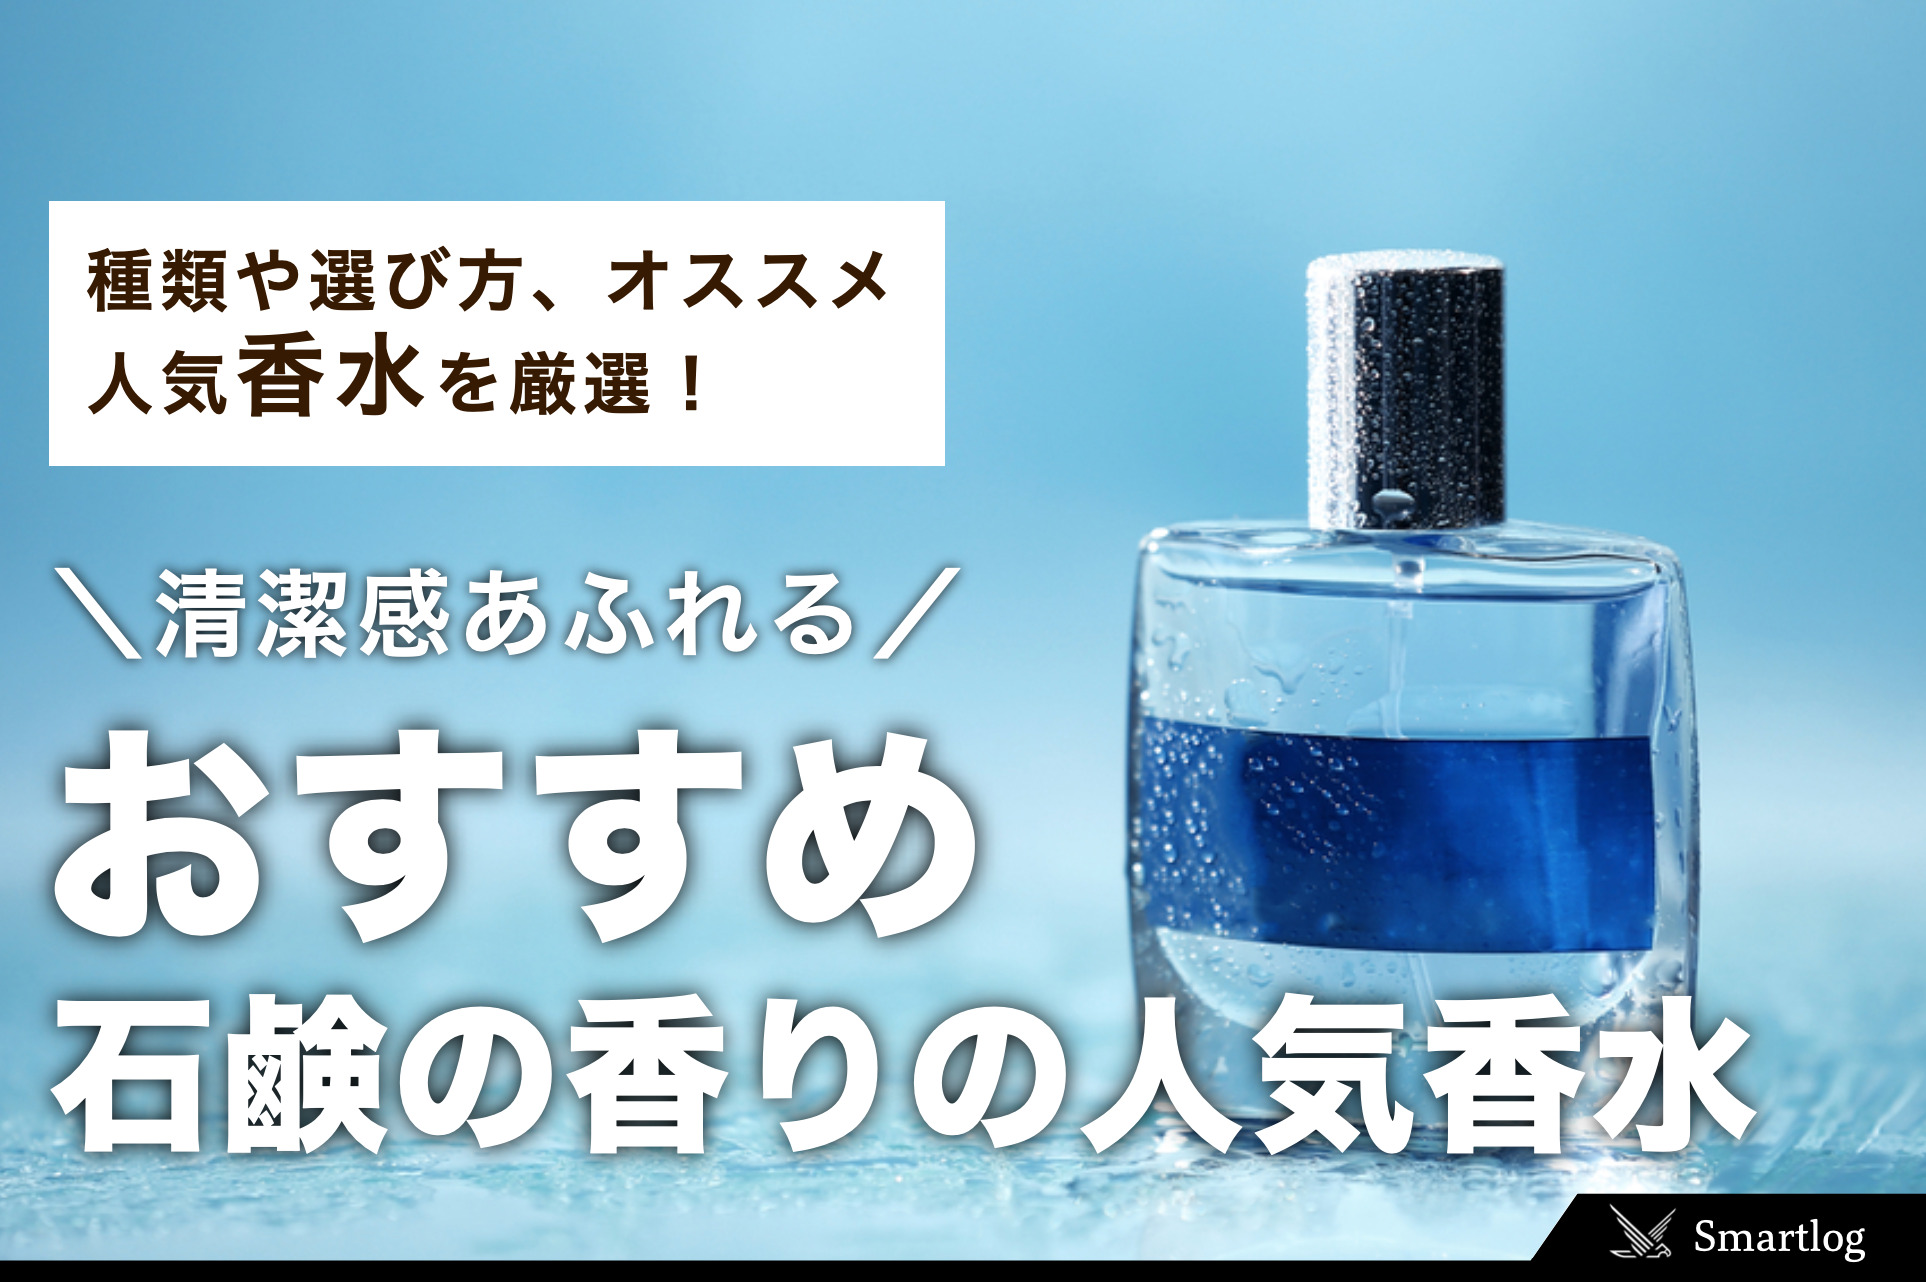 【激安価格】ブランド香水石けんセット ボディミスト